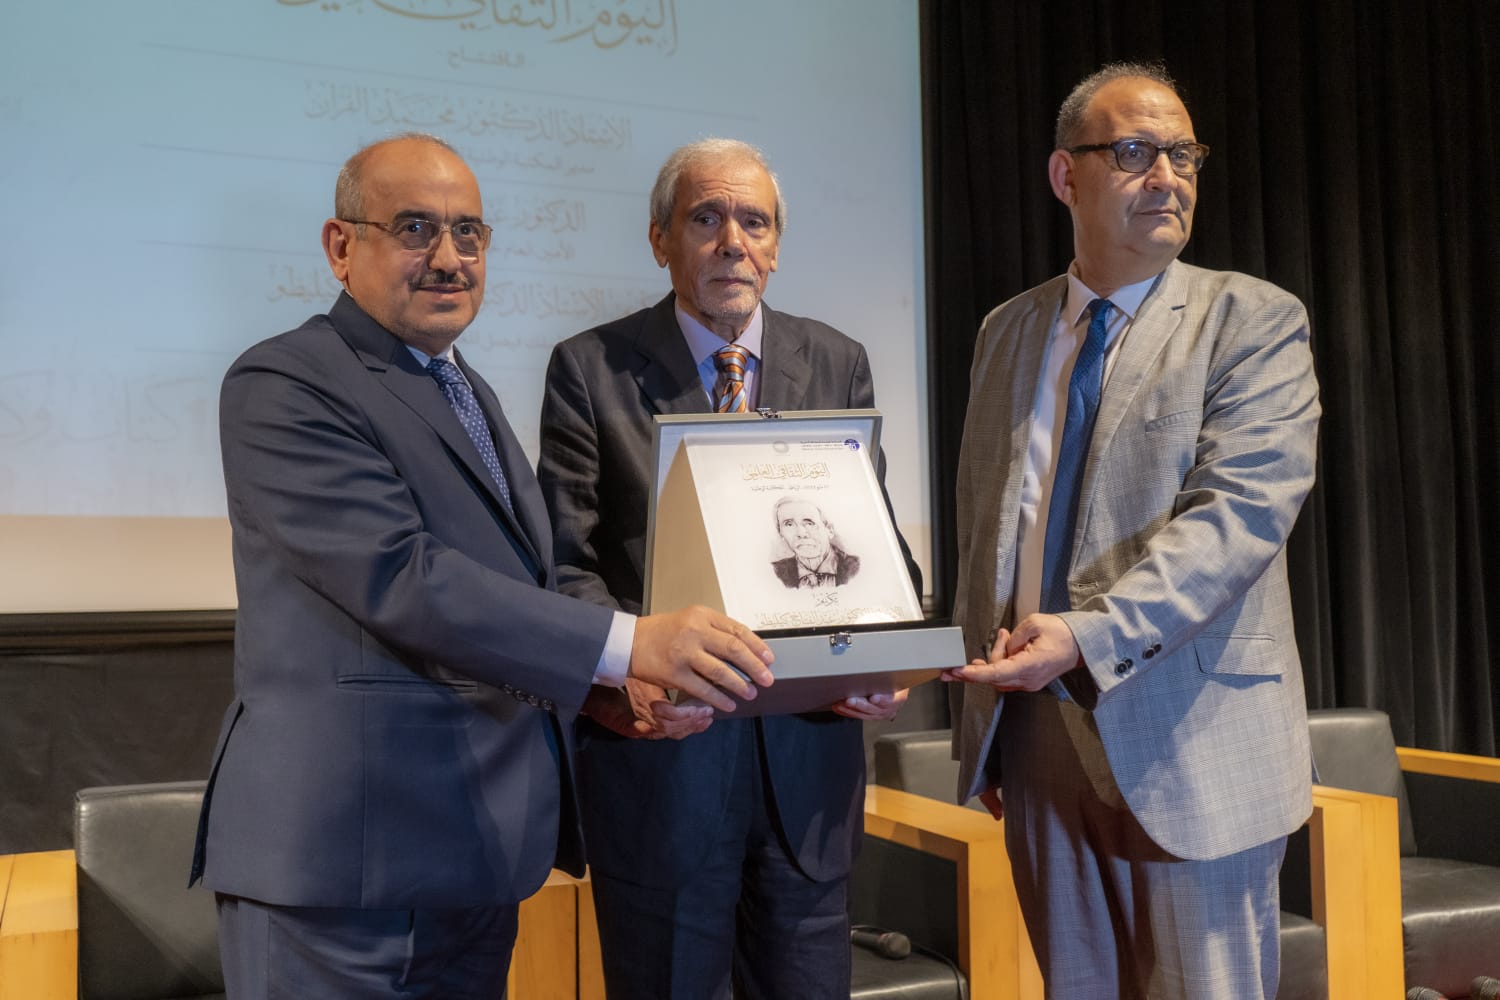 عبدالعزيز السبيل الأمين العام لجائزة الملك فيصل يسلم درعا للدكتور عبر الفتاح كيليطو (وسط)وبدا الى جانبهما الدكتور محمر الفران (الشرق الاوسط) 